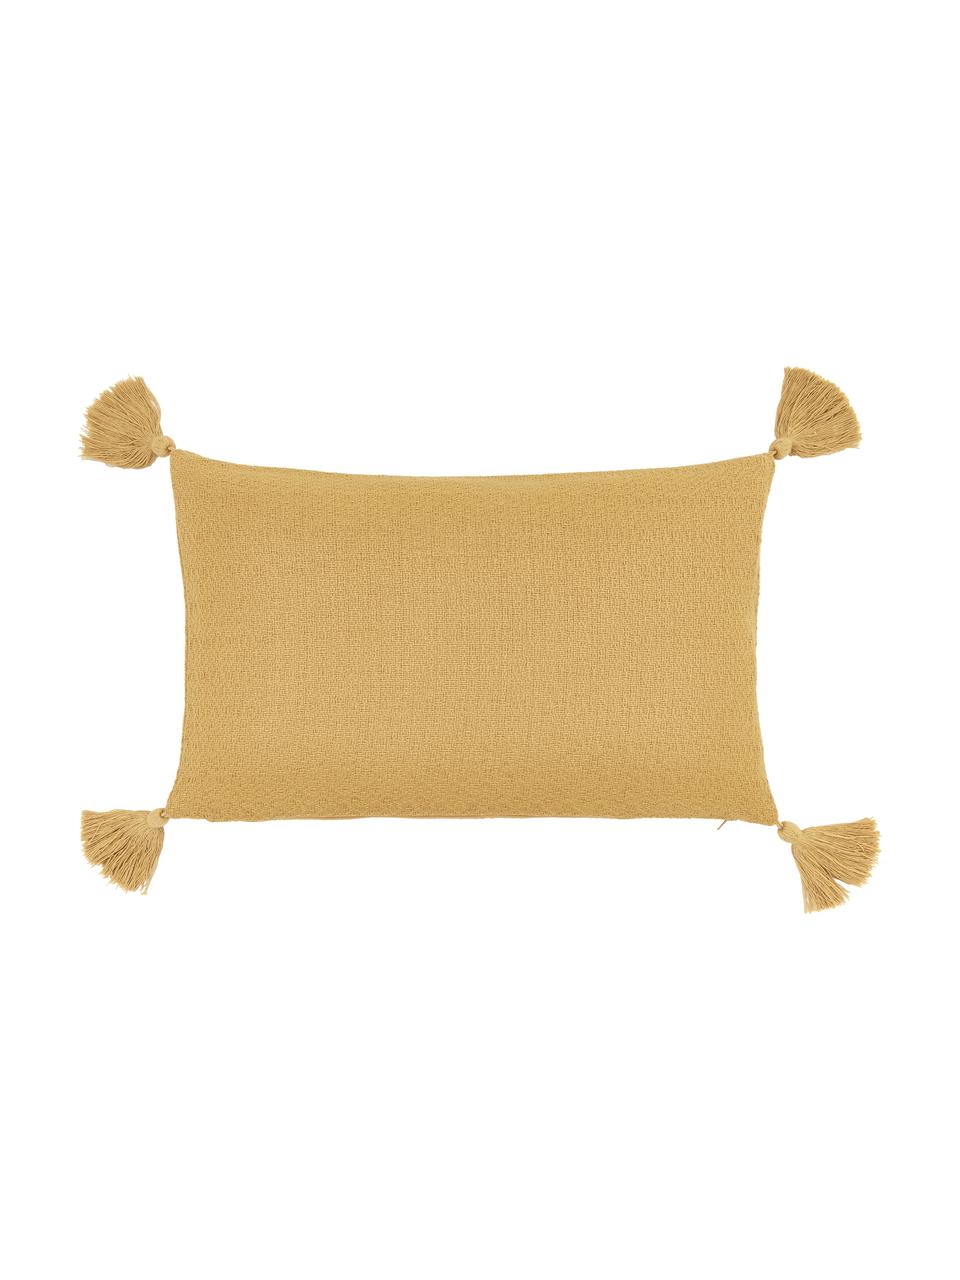 Poszewka na poduszkę z chwostami Lori, 100% bawełna, Żółty, S 30 x D 50 cm